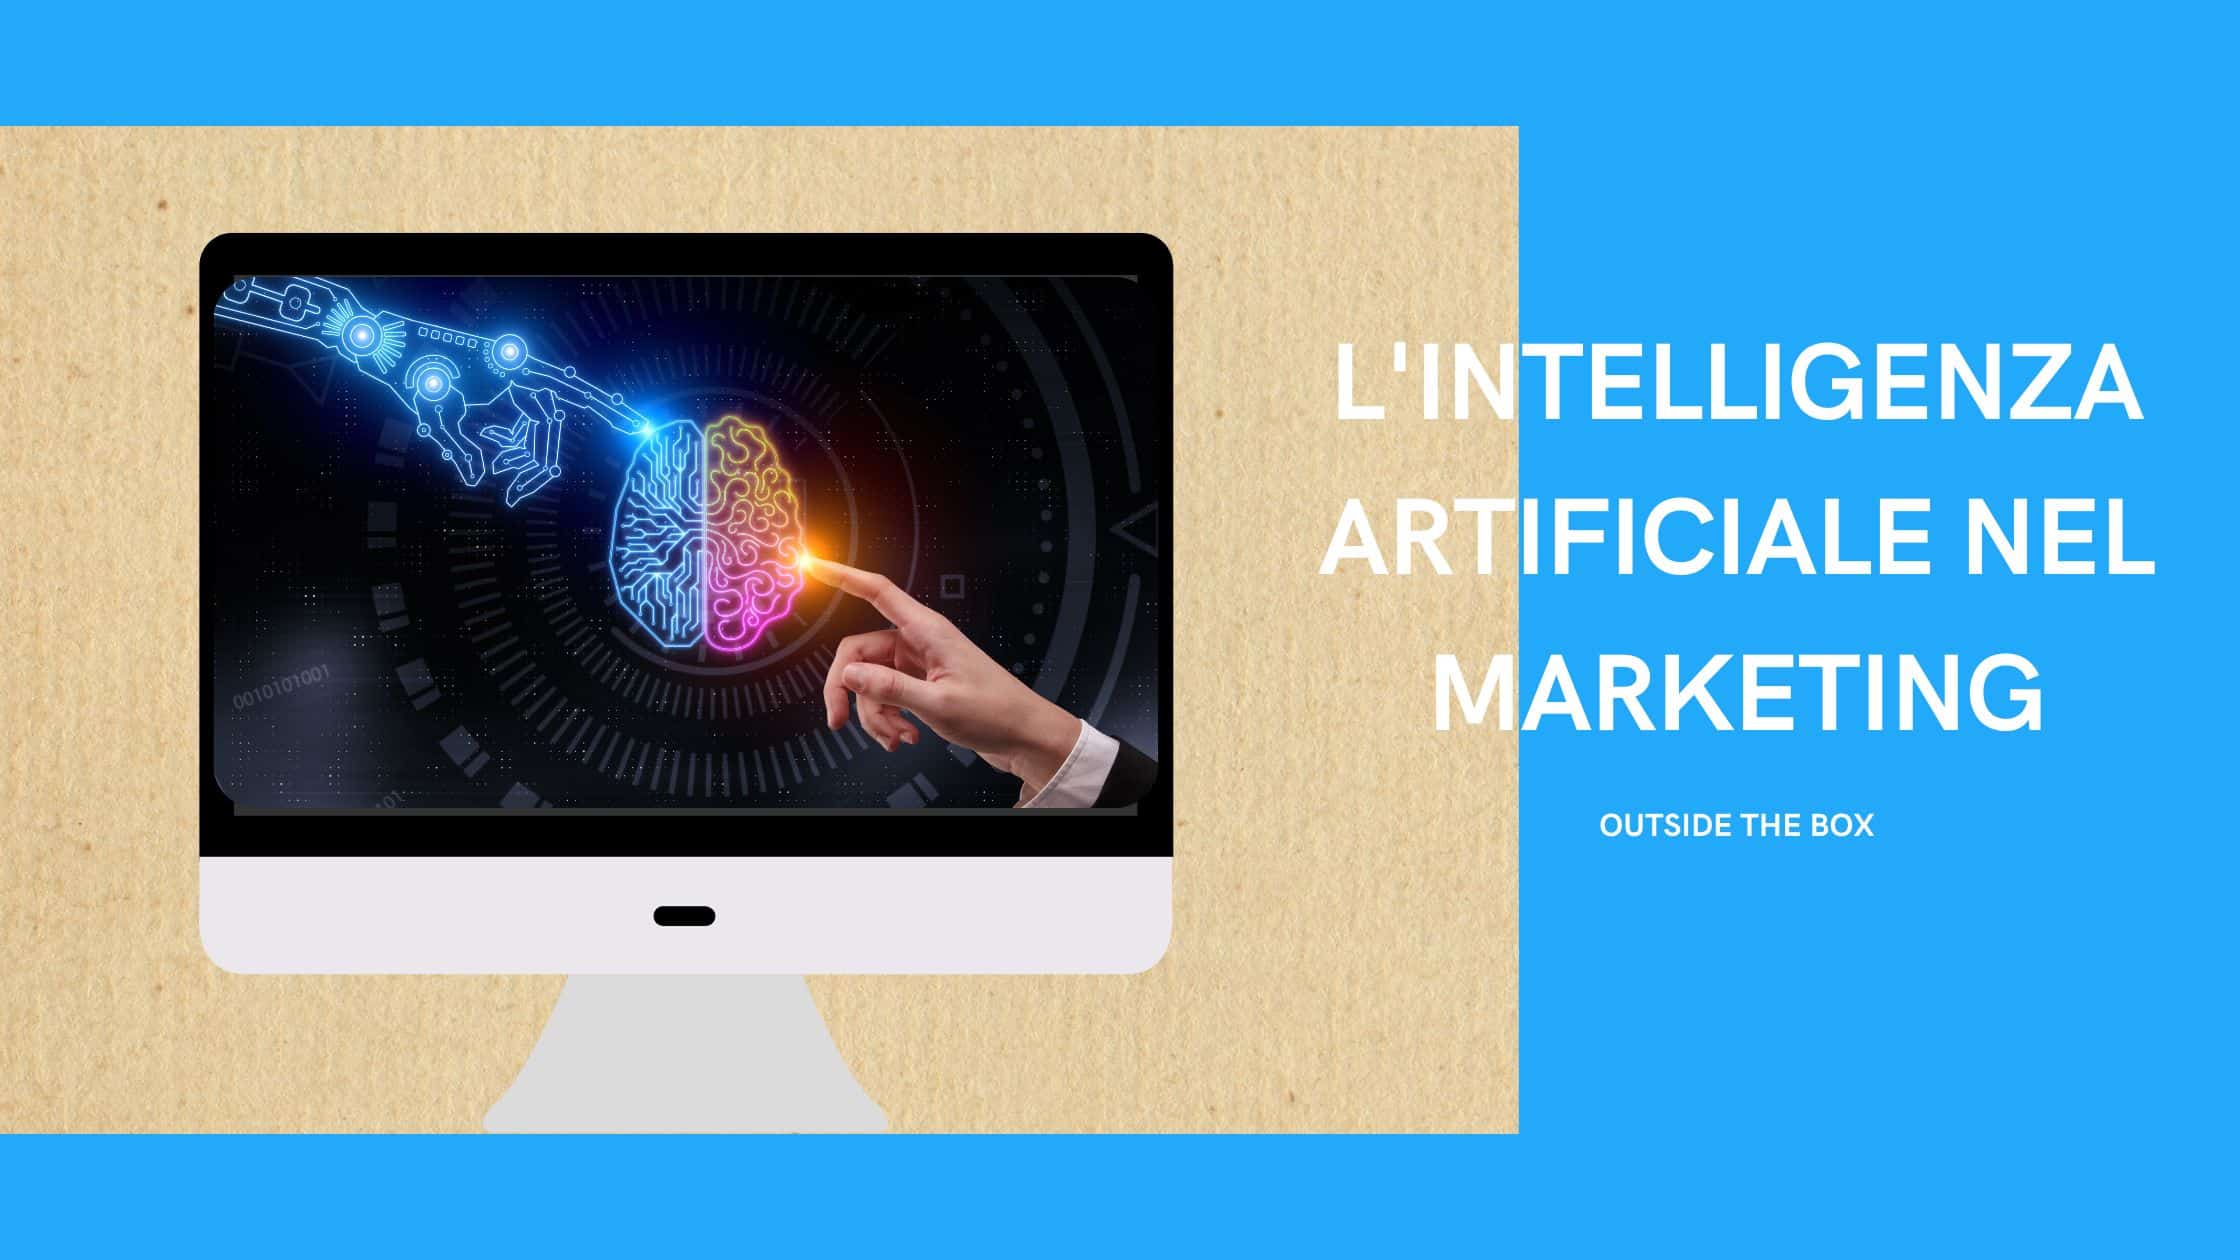 Come utilizzare la tecnologia dell’intelligenza artificiale nel marketing